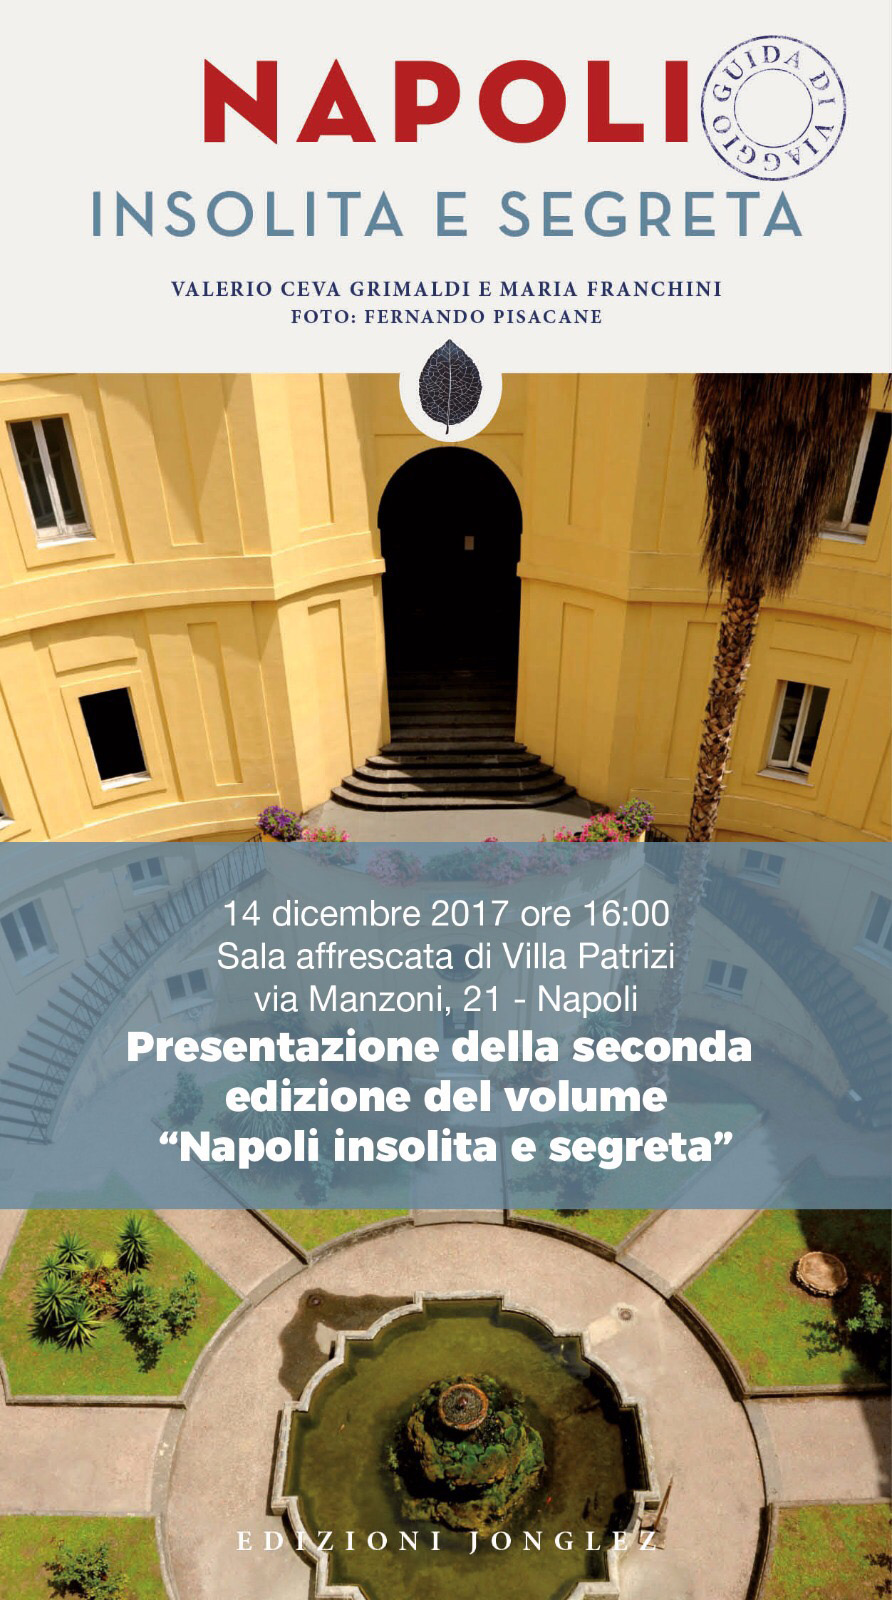 Nuova edizione della guida “Napoli insolita e segreta”, oltre 300 luoghi poco noti